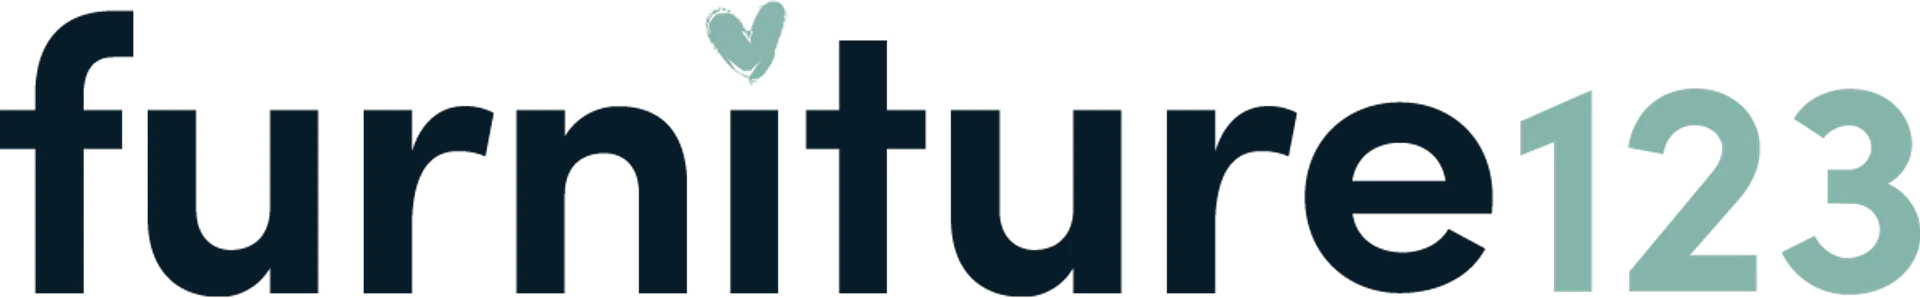 FURNITURE123 logo